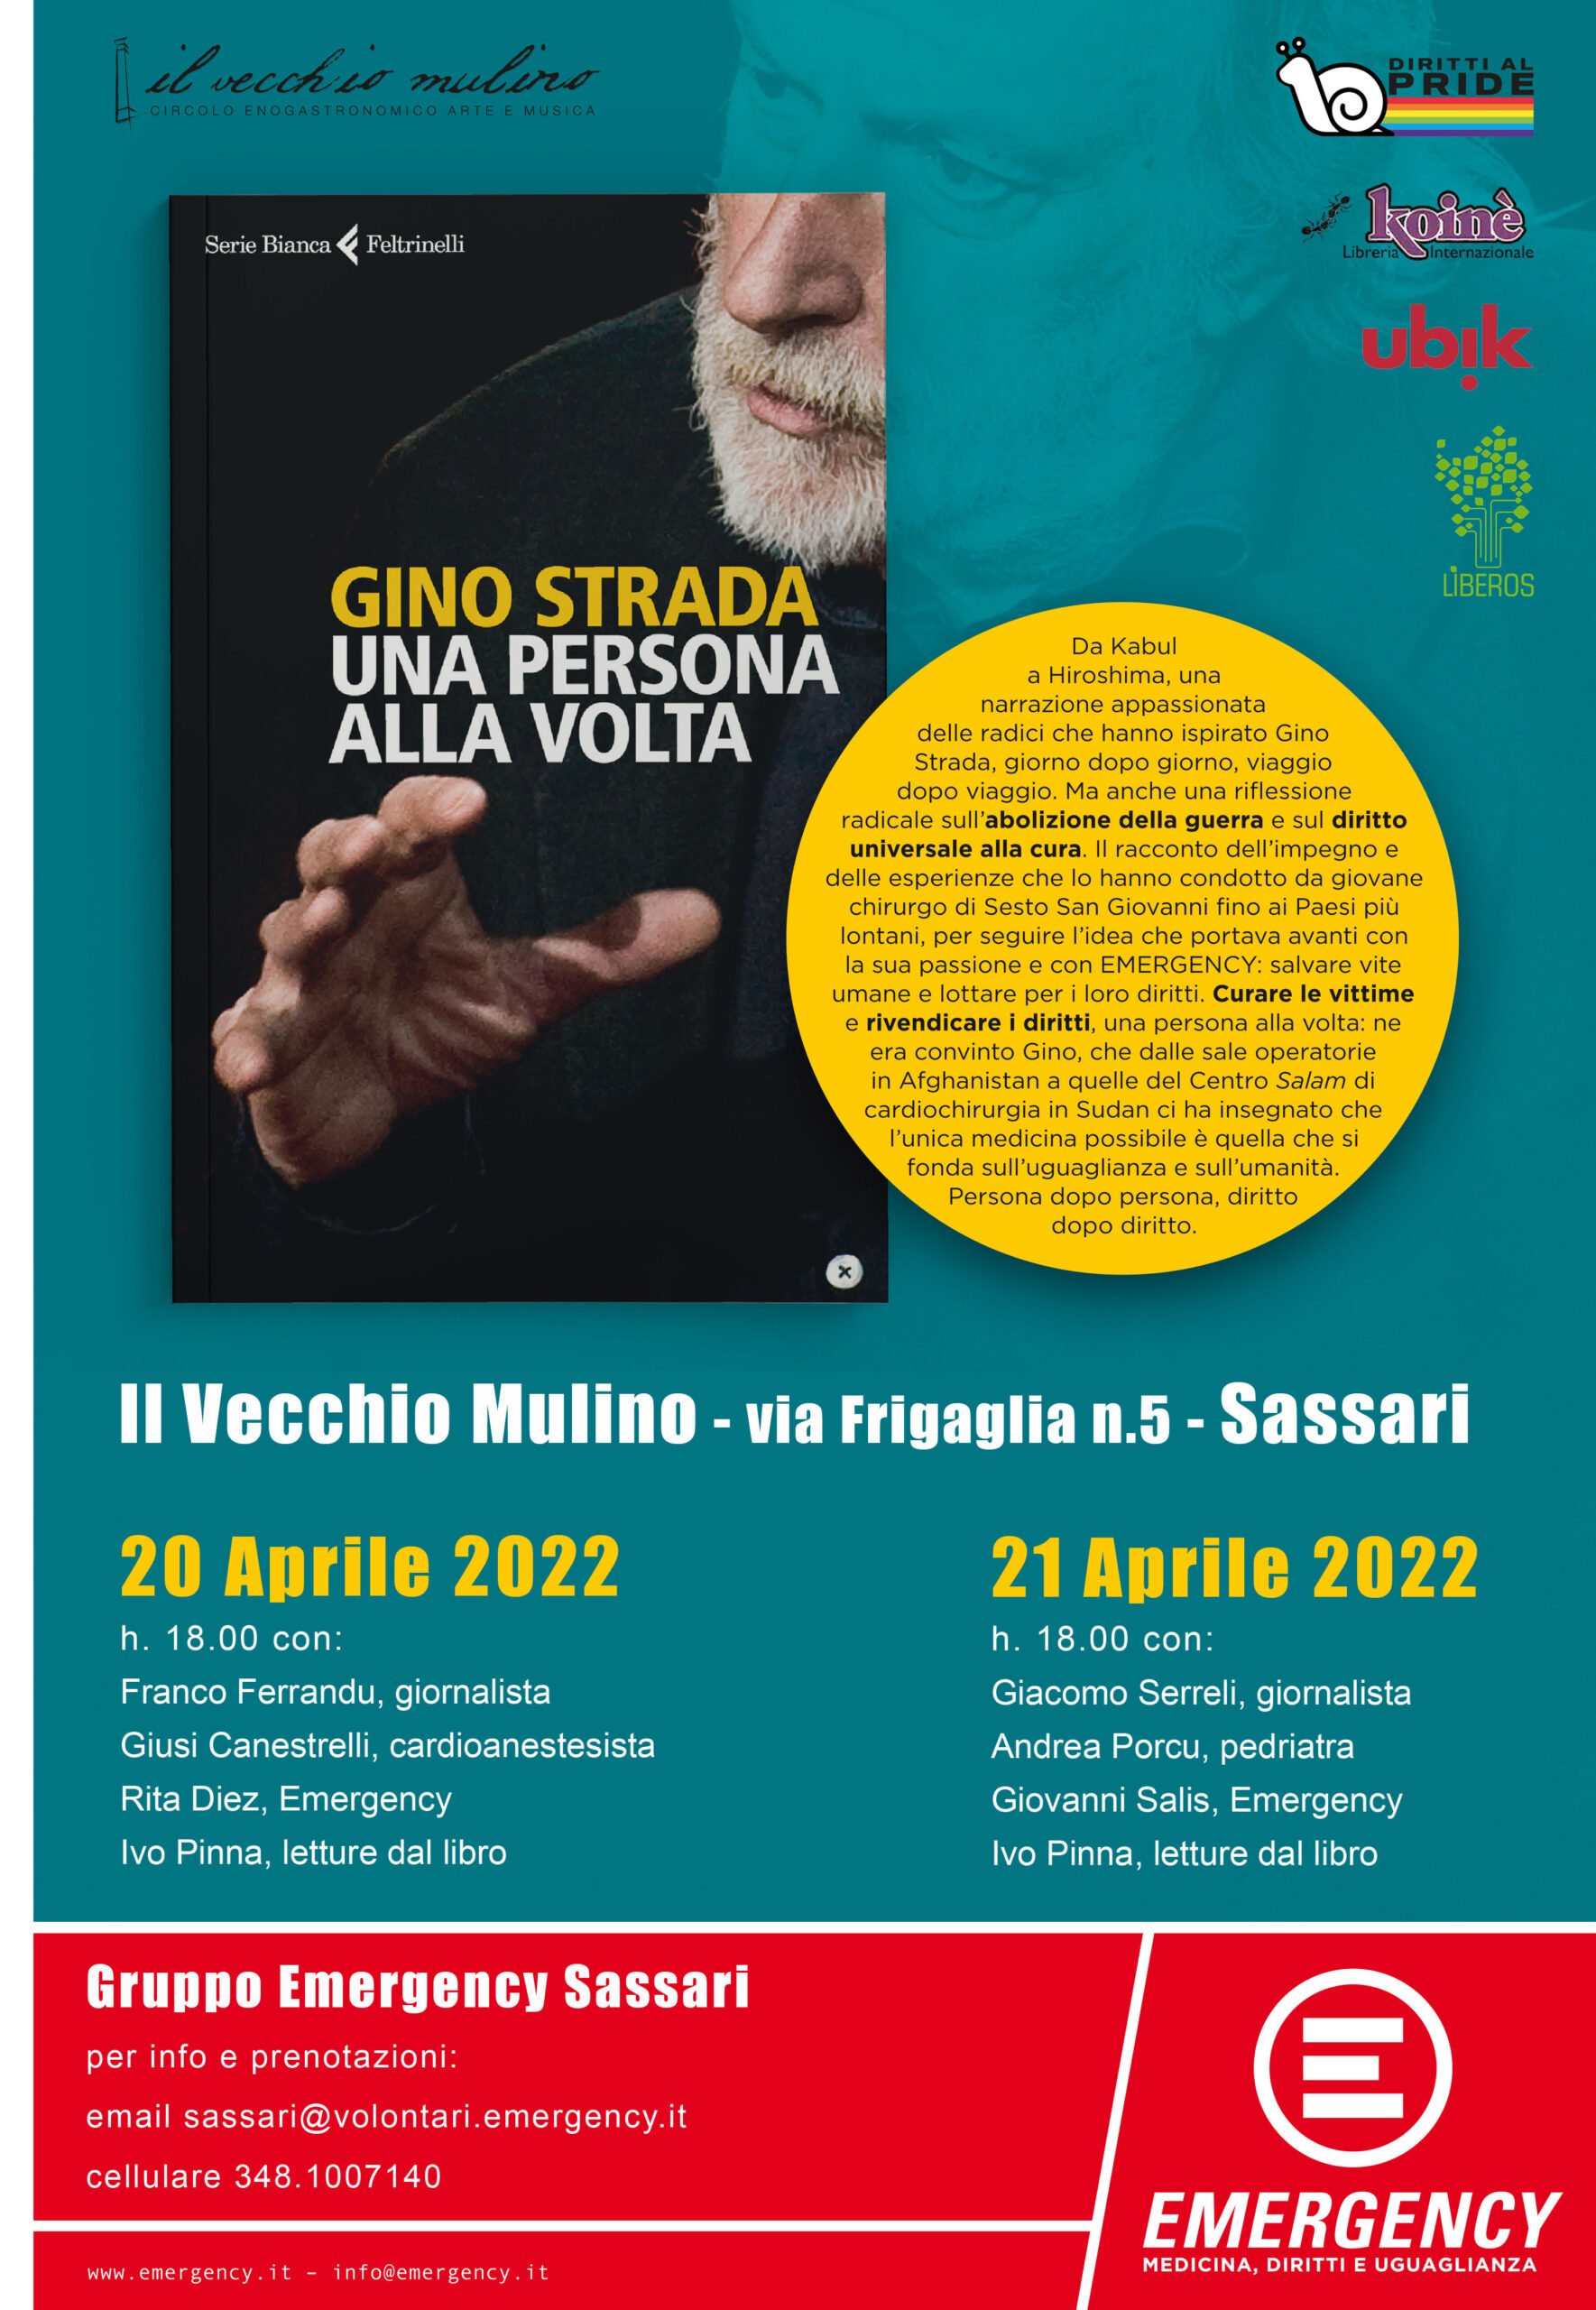 Emergency, Il 20 e il 21 aprile a Sassari la presentazione del libro di Gino Strada